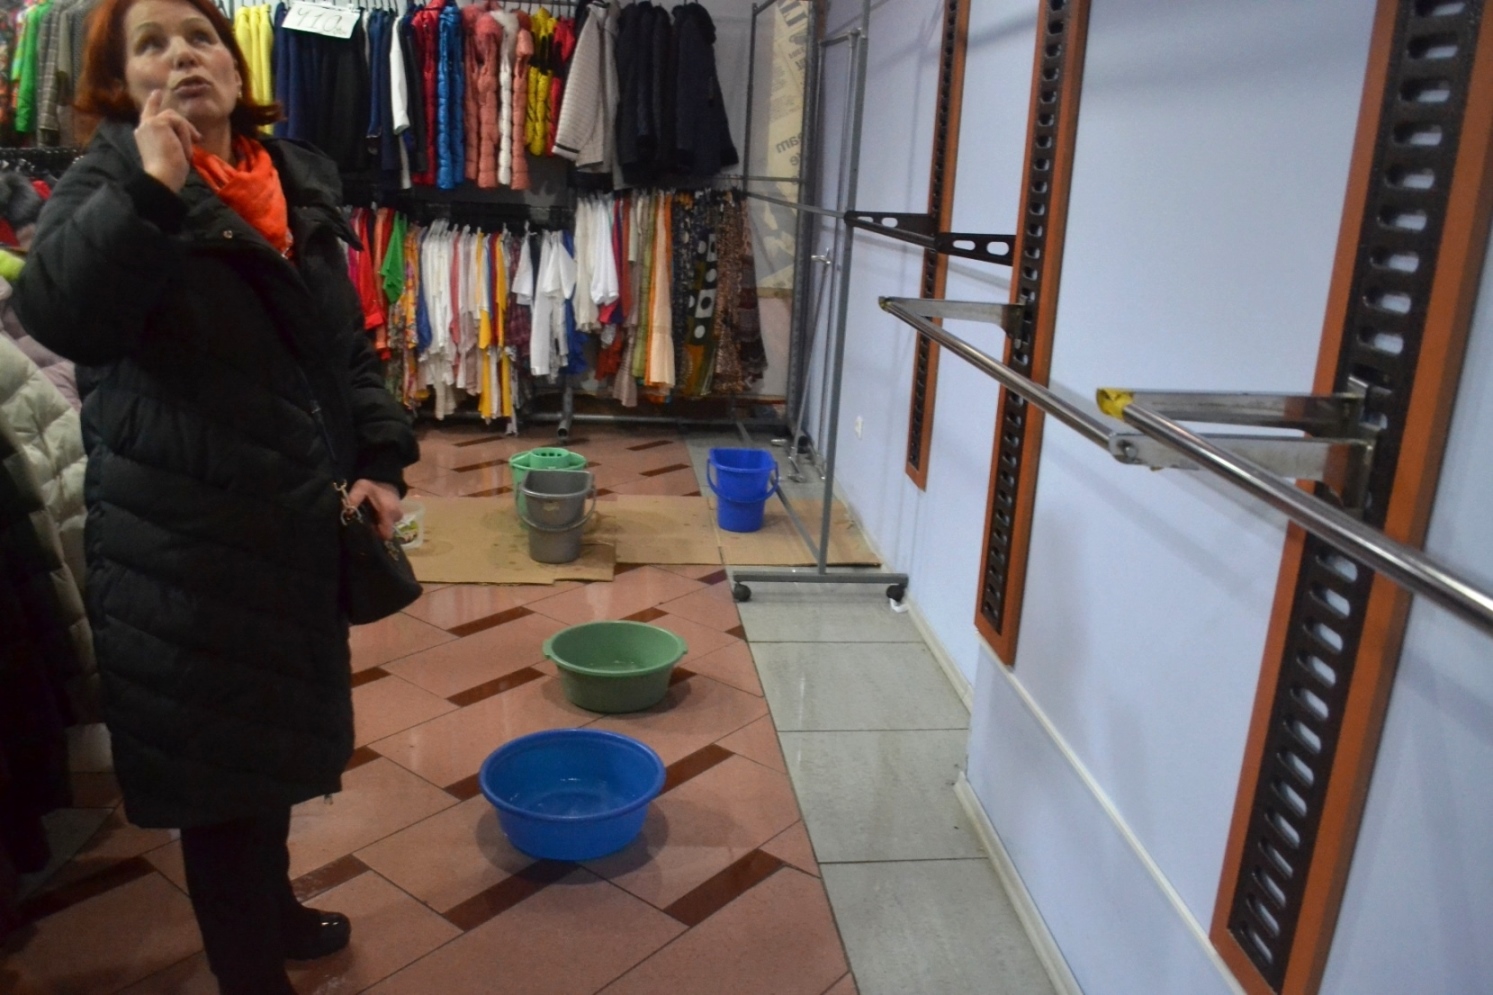 Через будівництво у "Короні" магазини ужгородського пасажу заливає водою, потріскали стіни та небезпечно працювати (ФОТО)